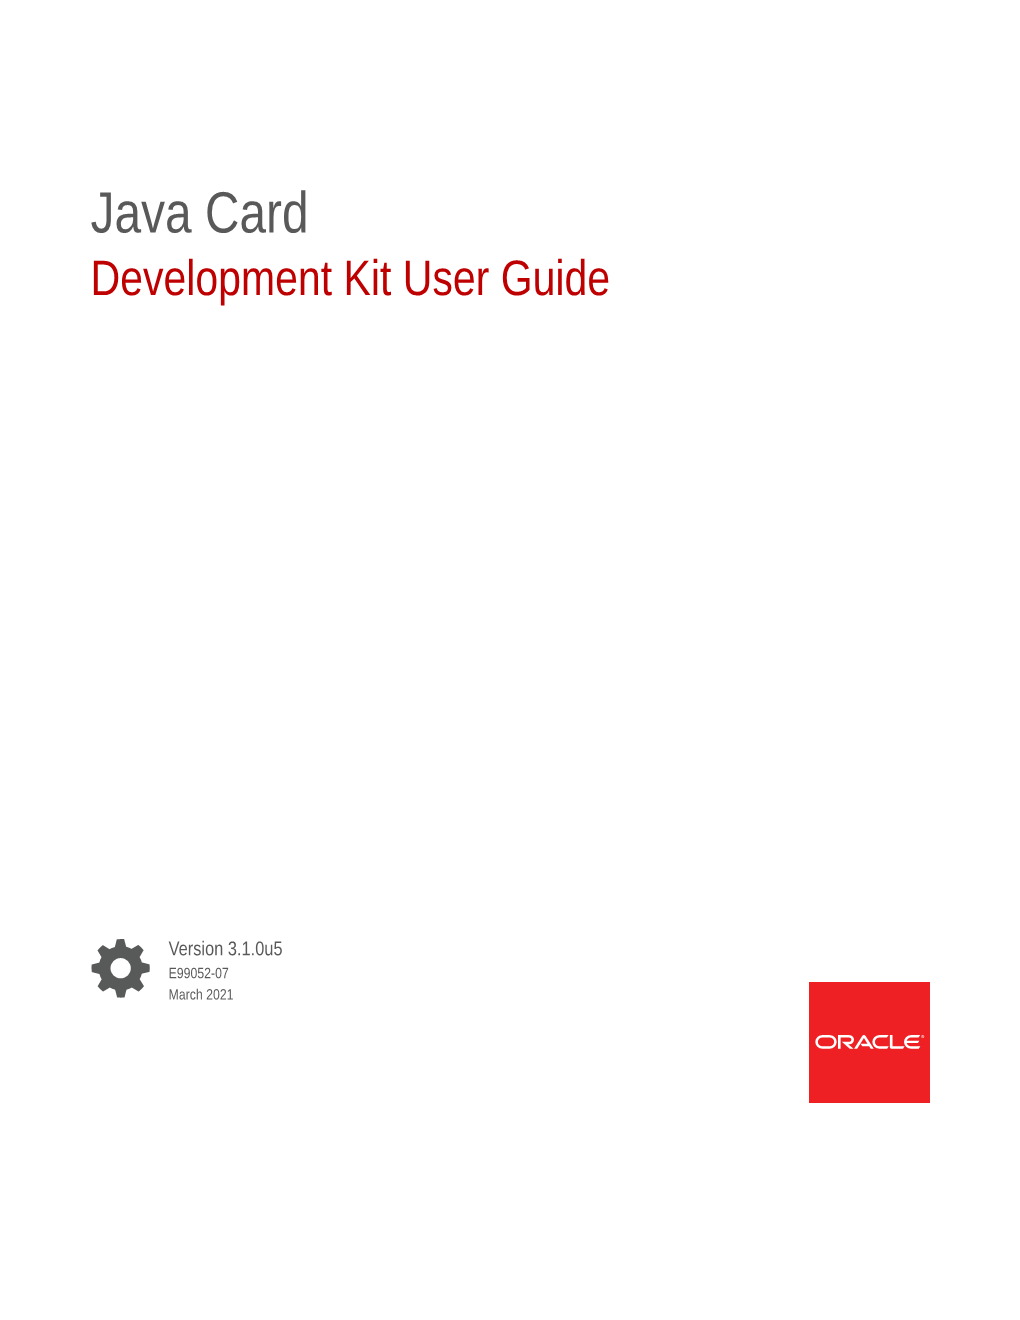 Java Card Development Kit User Guide